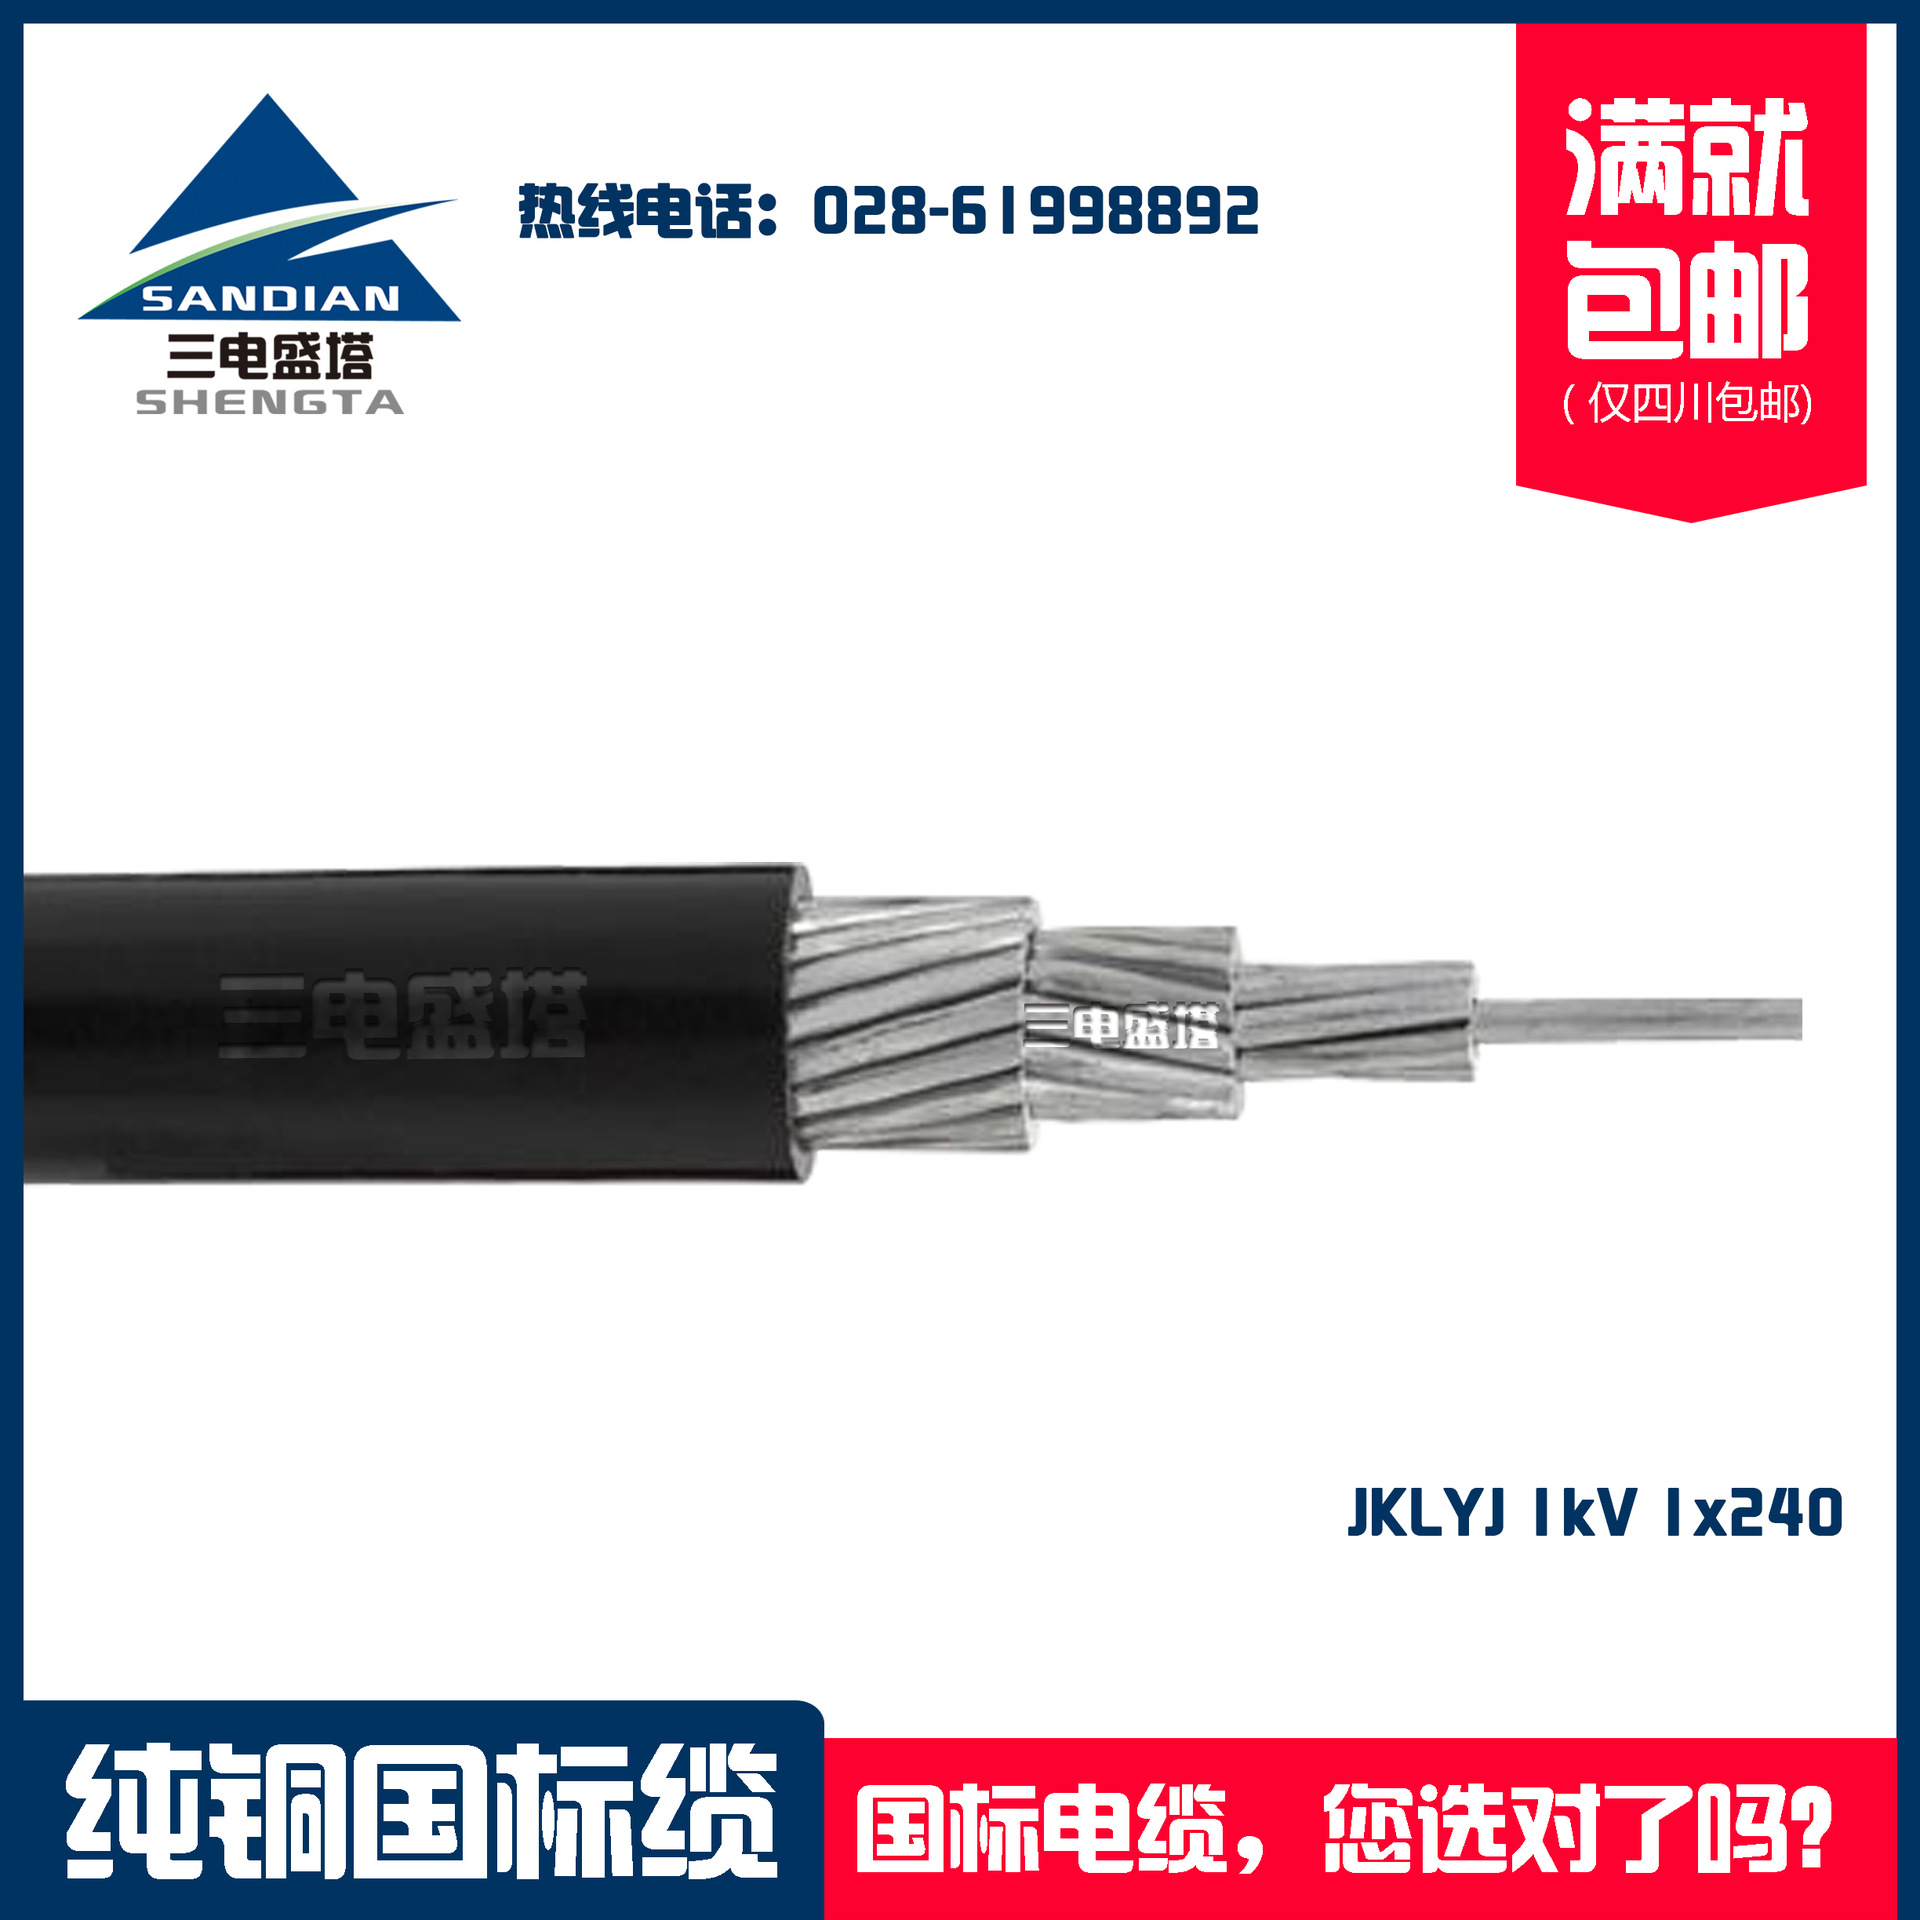 三电盛塔 铝芯架空电缆 国标电缆 JKLYJ 1*240